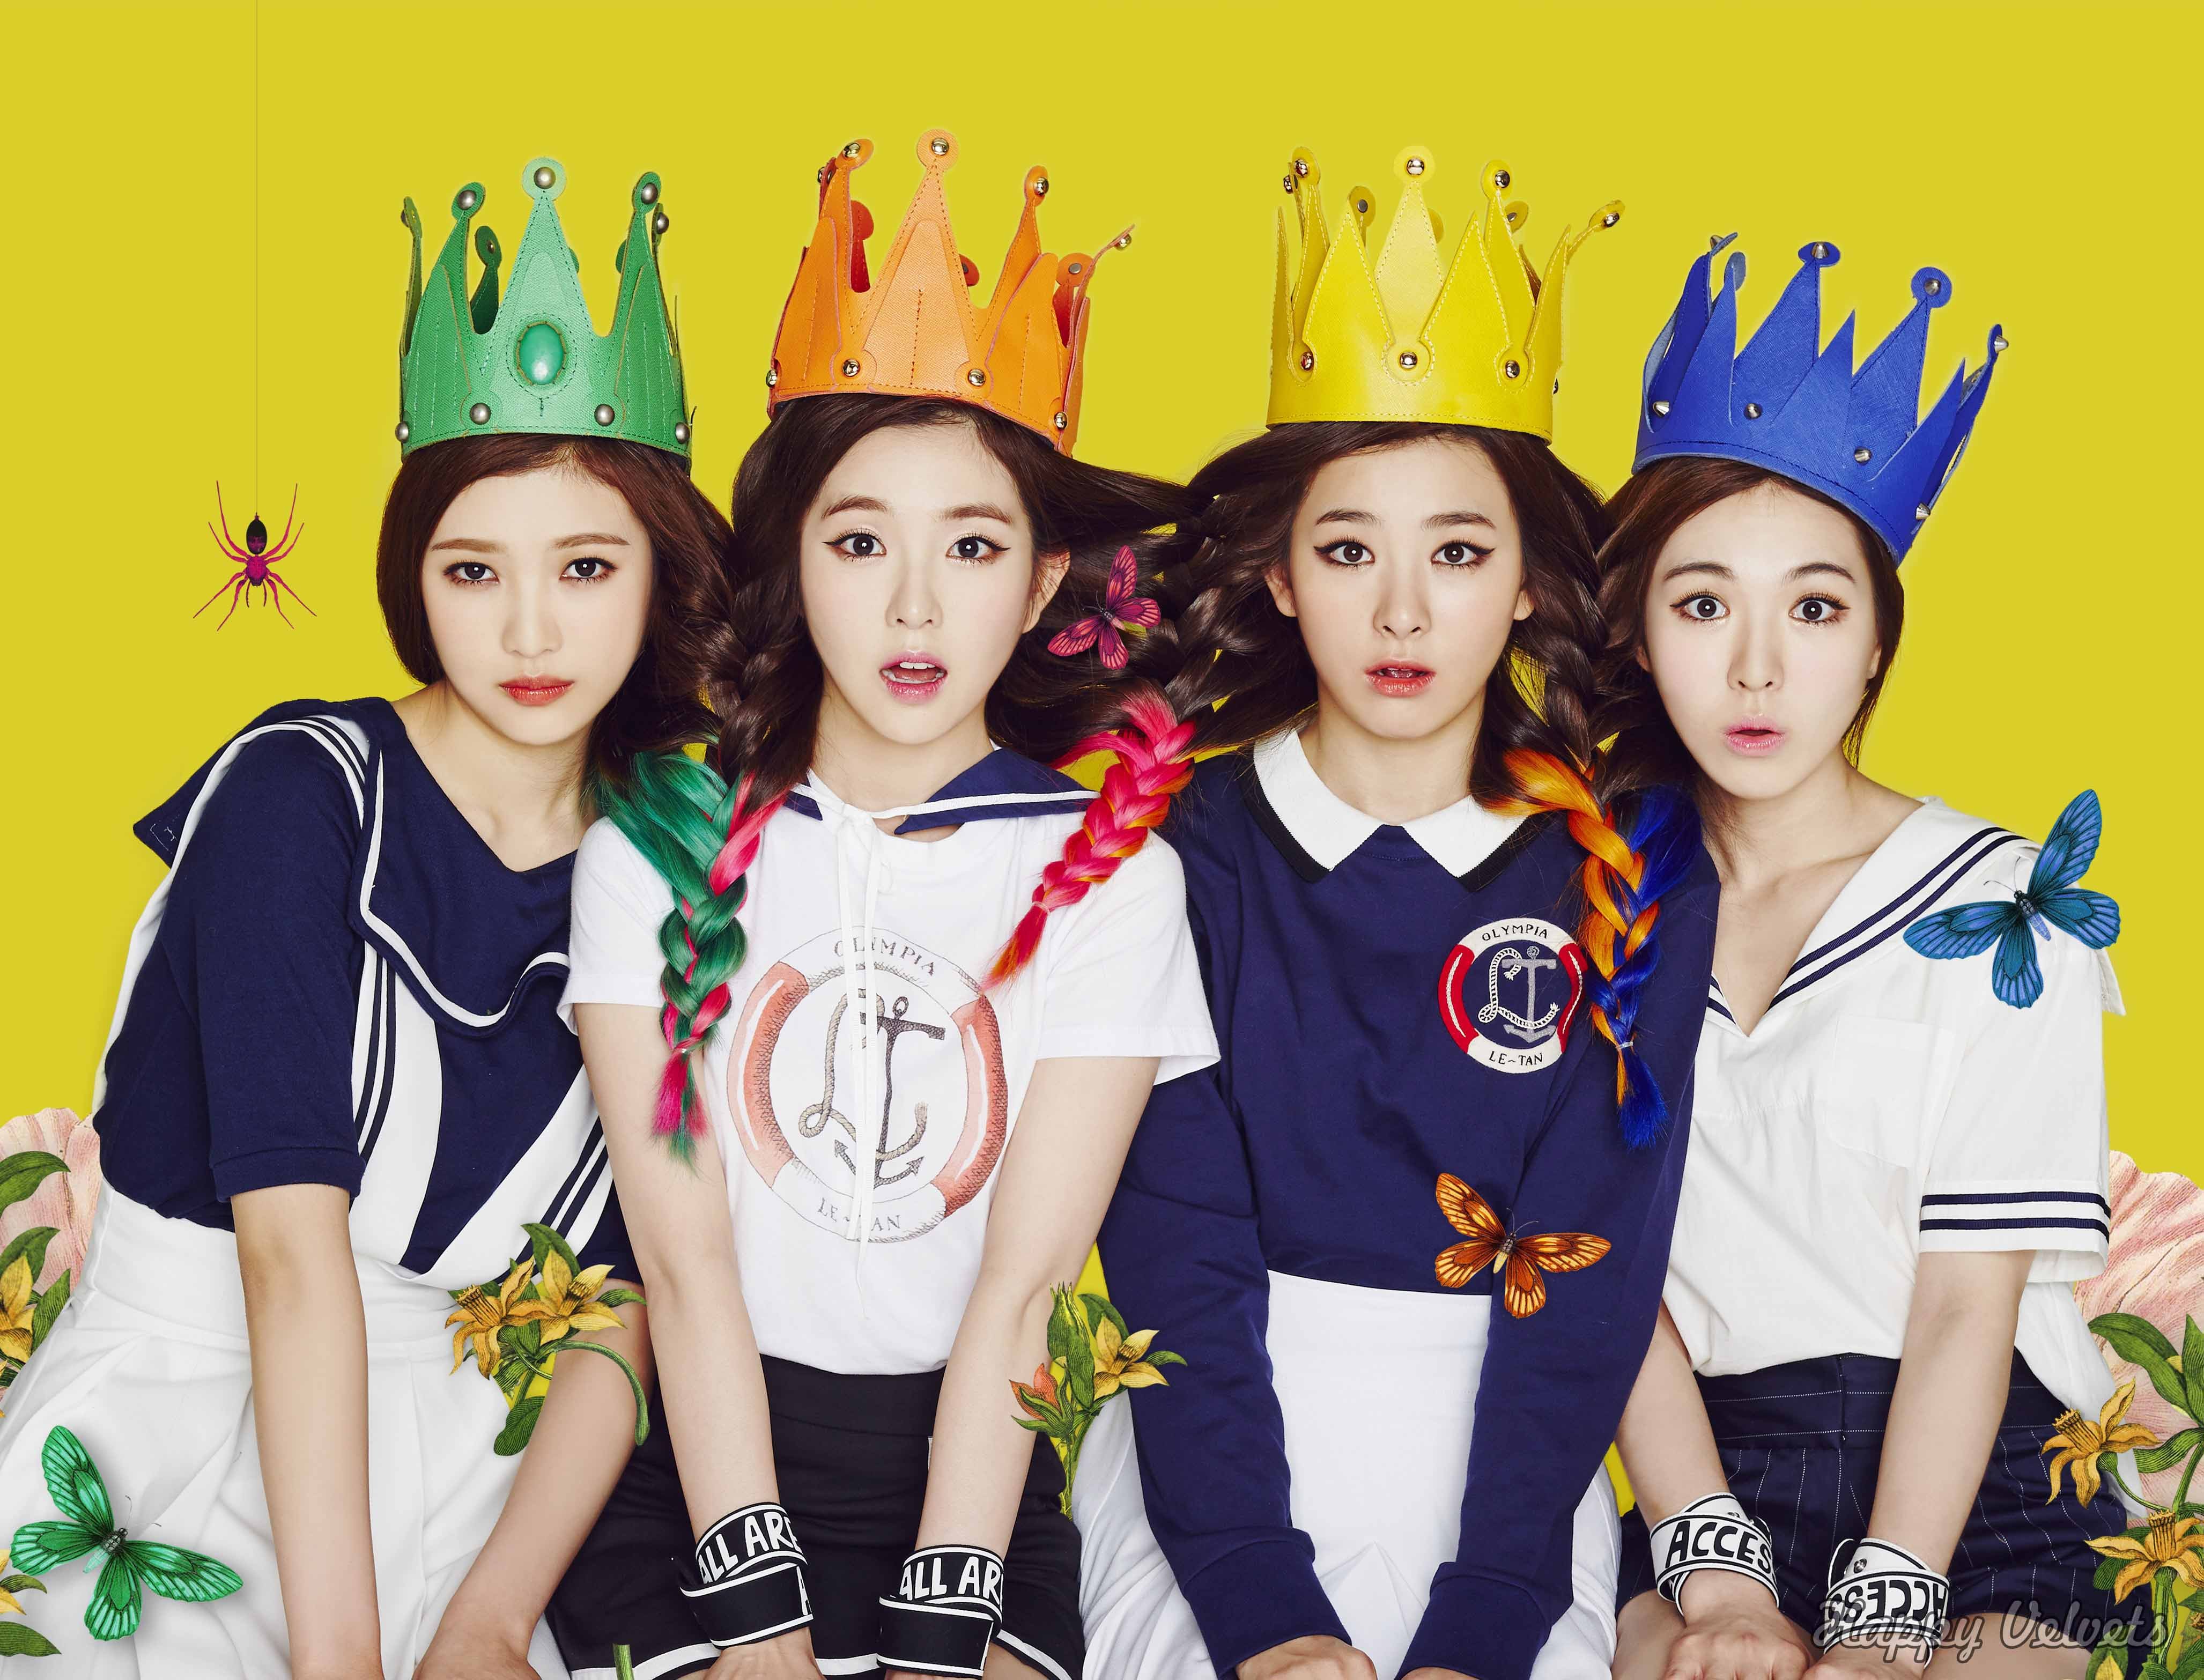 red, Velvet, Kpop, Pop, Dance, K pop, Asian, Oriental, 1rvel Wallpaper